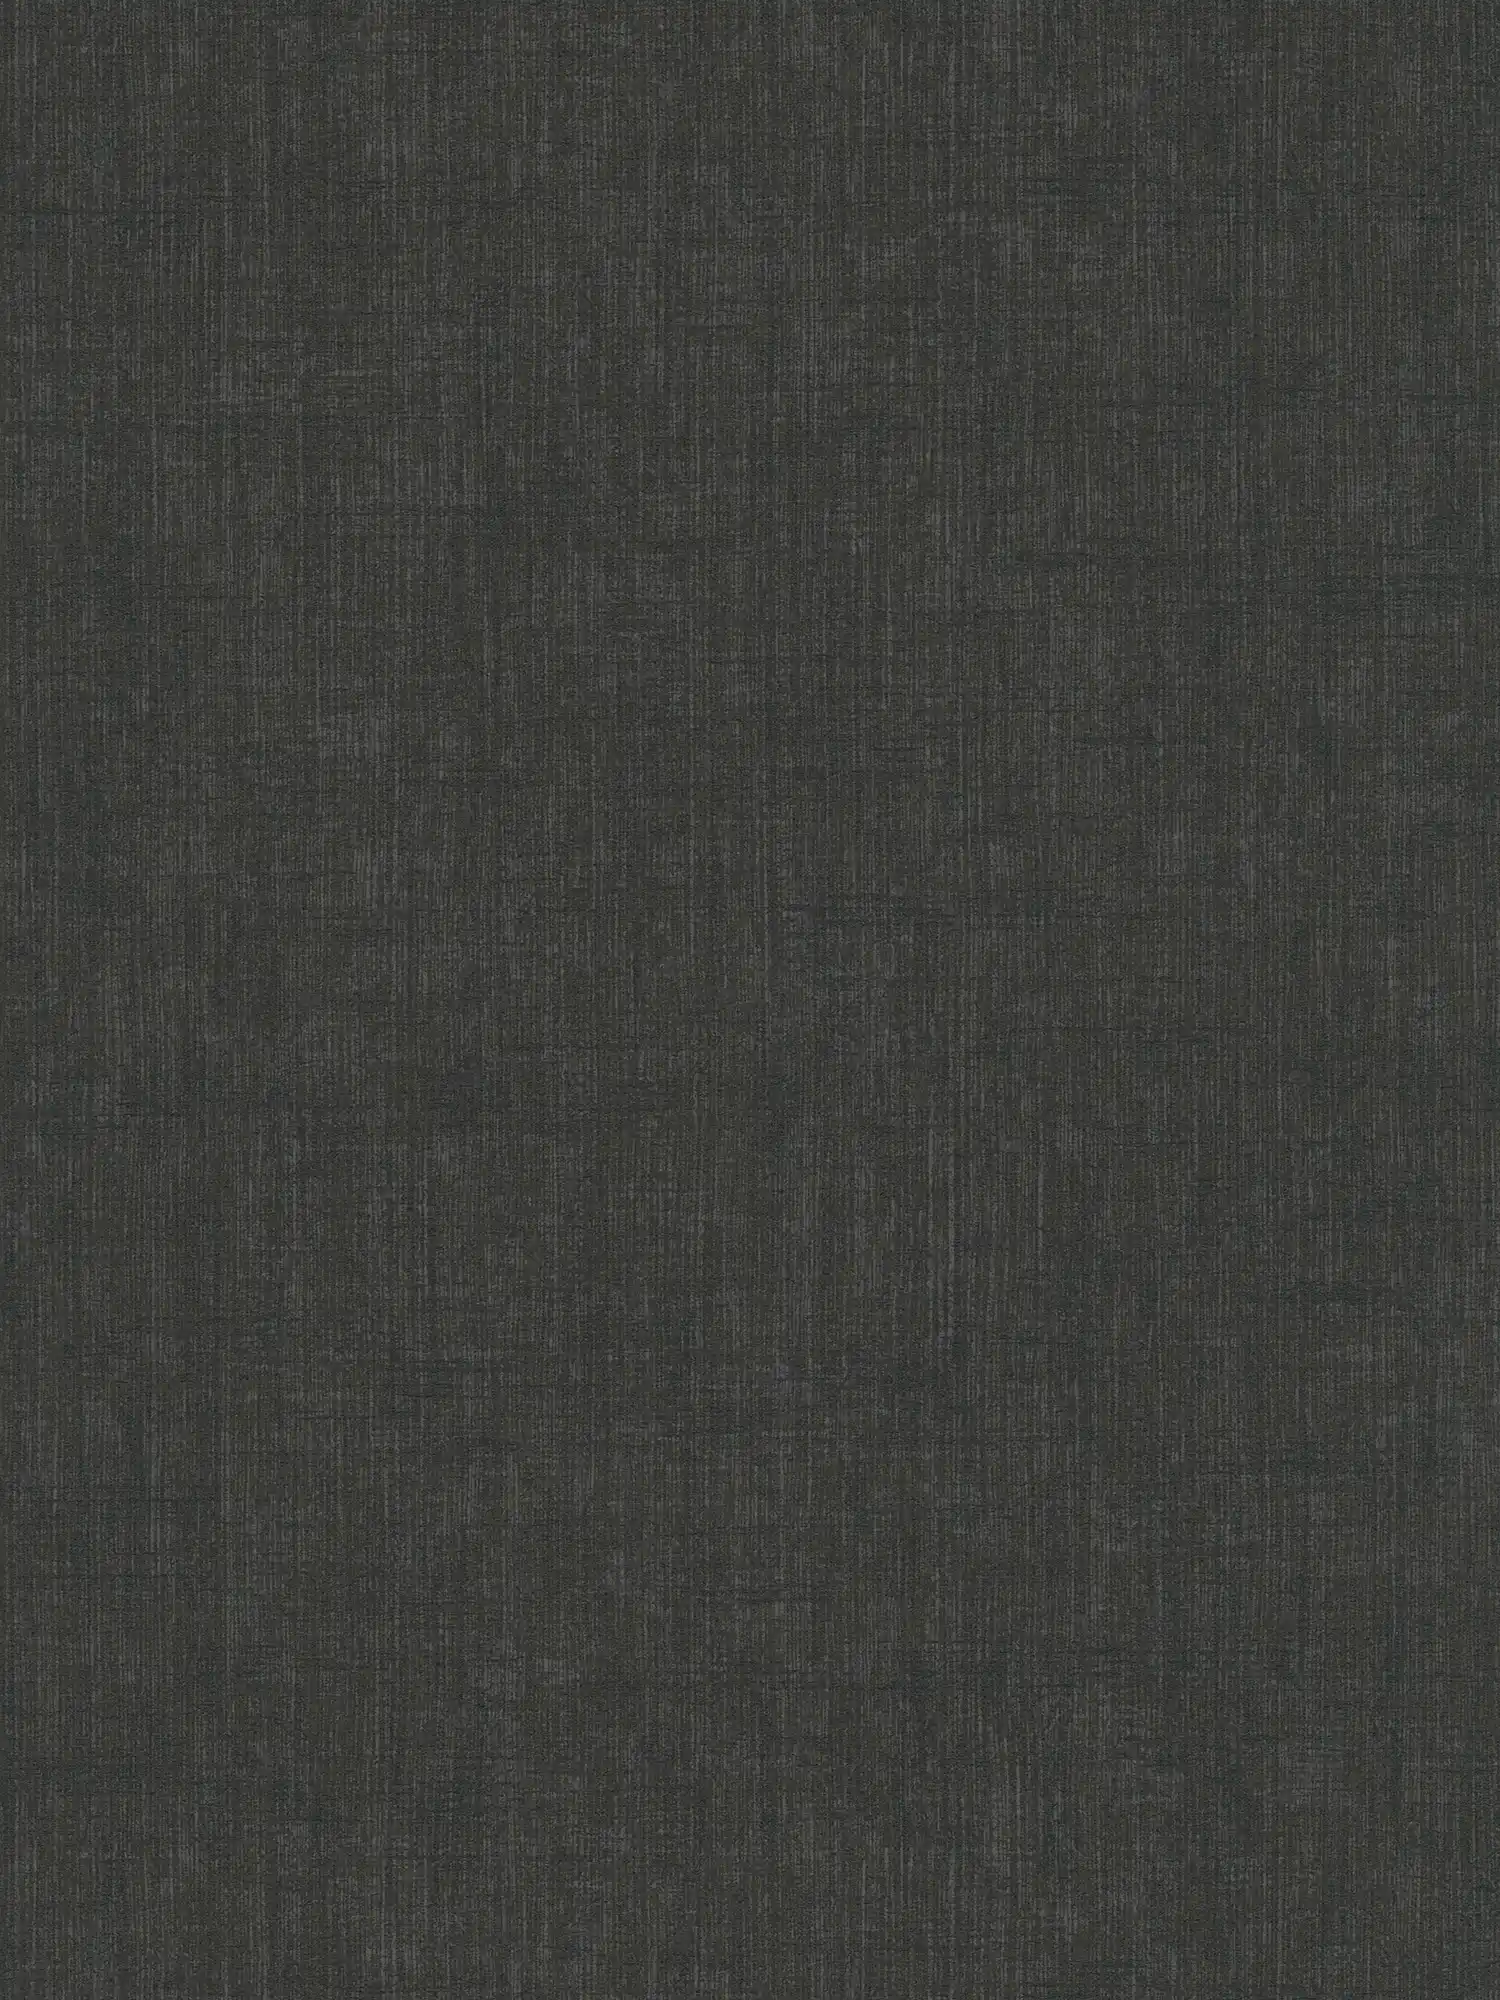 Zwart vliesbehang met zacht textielpatroon
